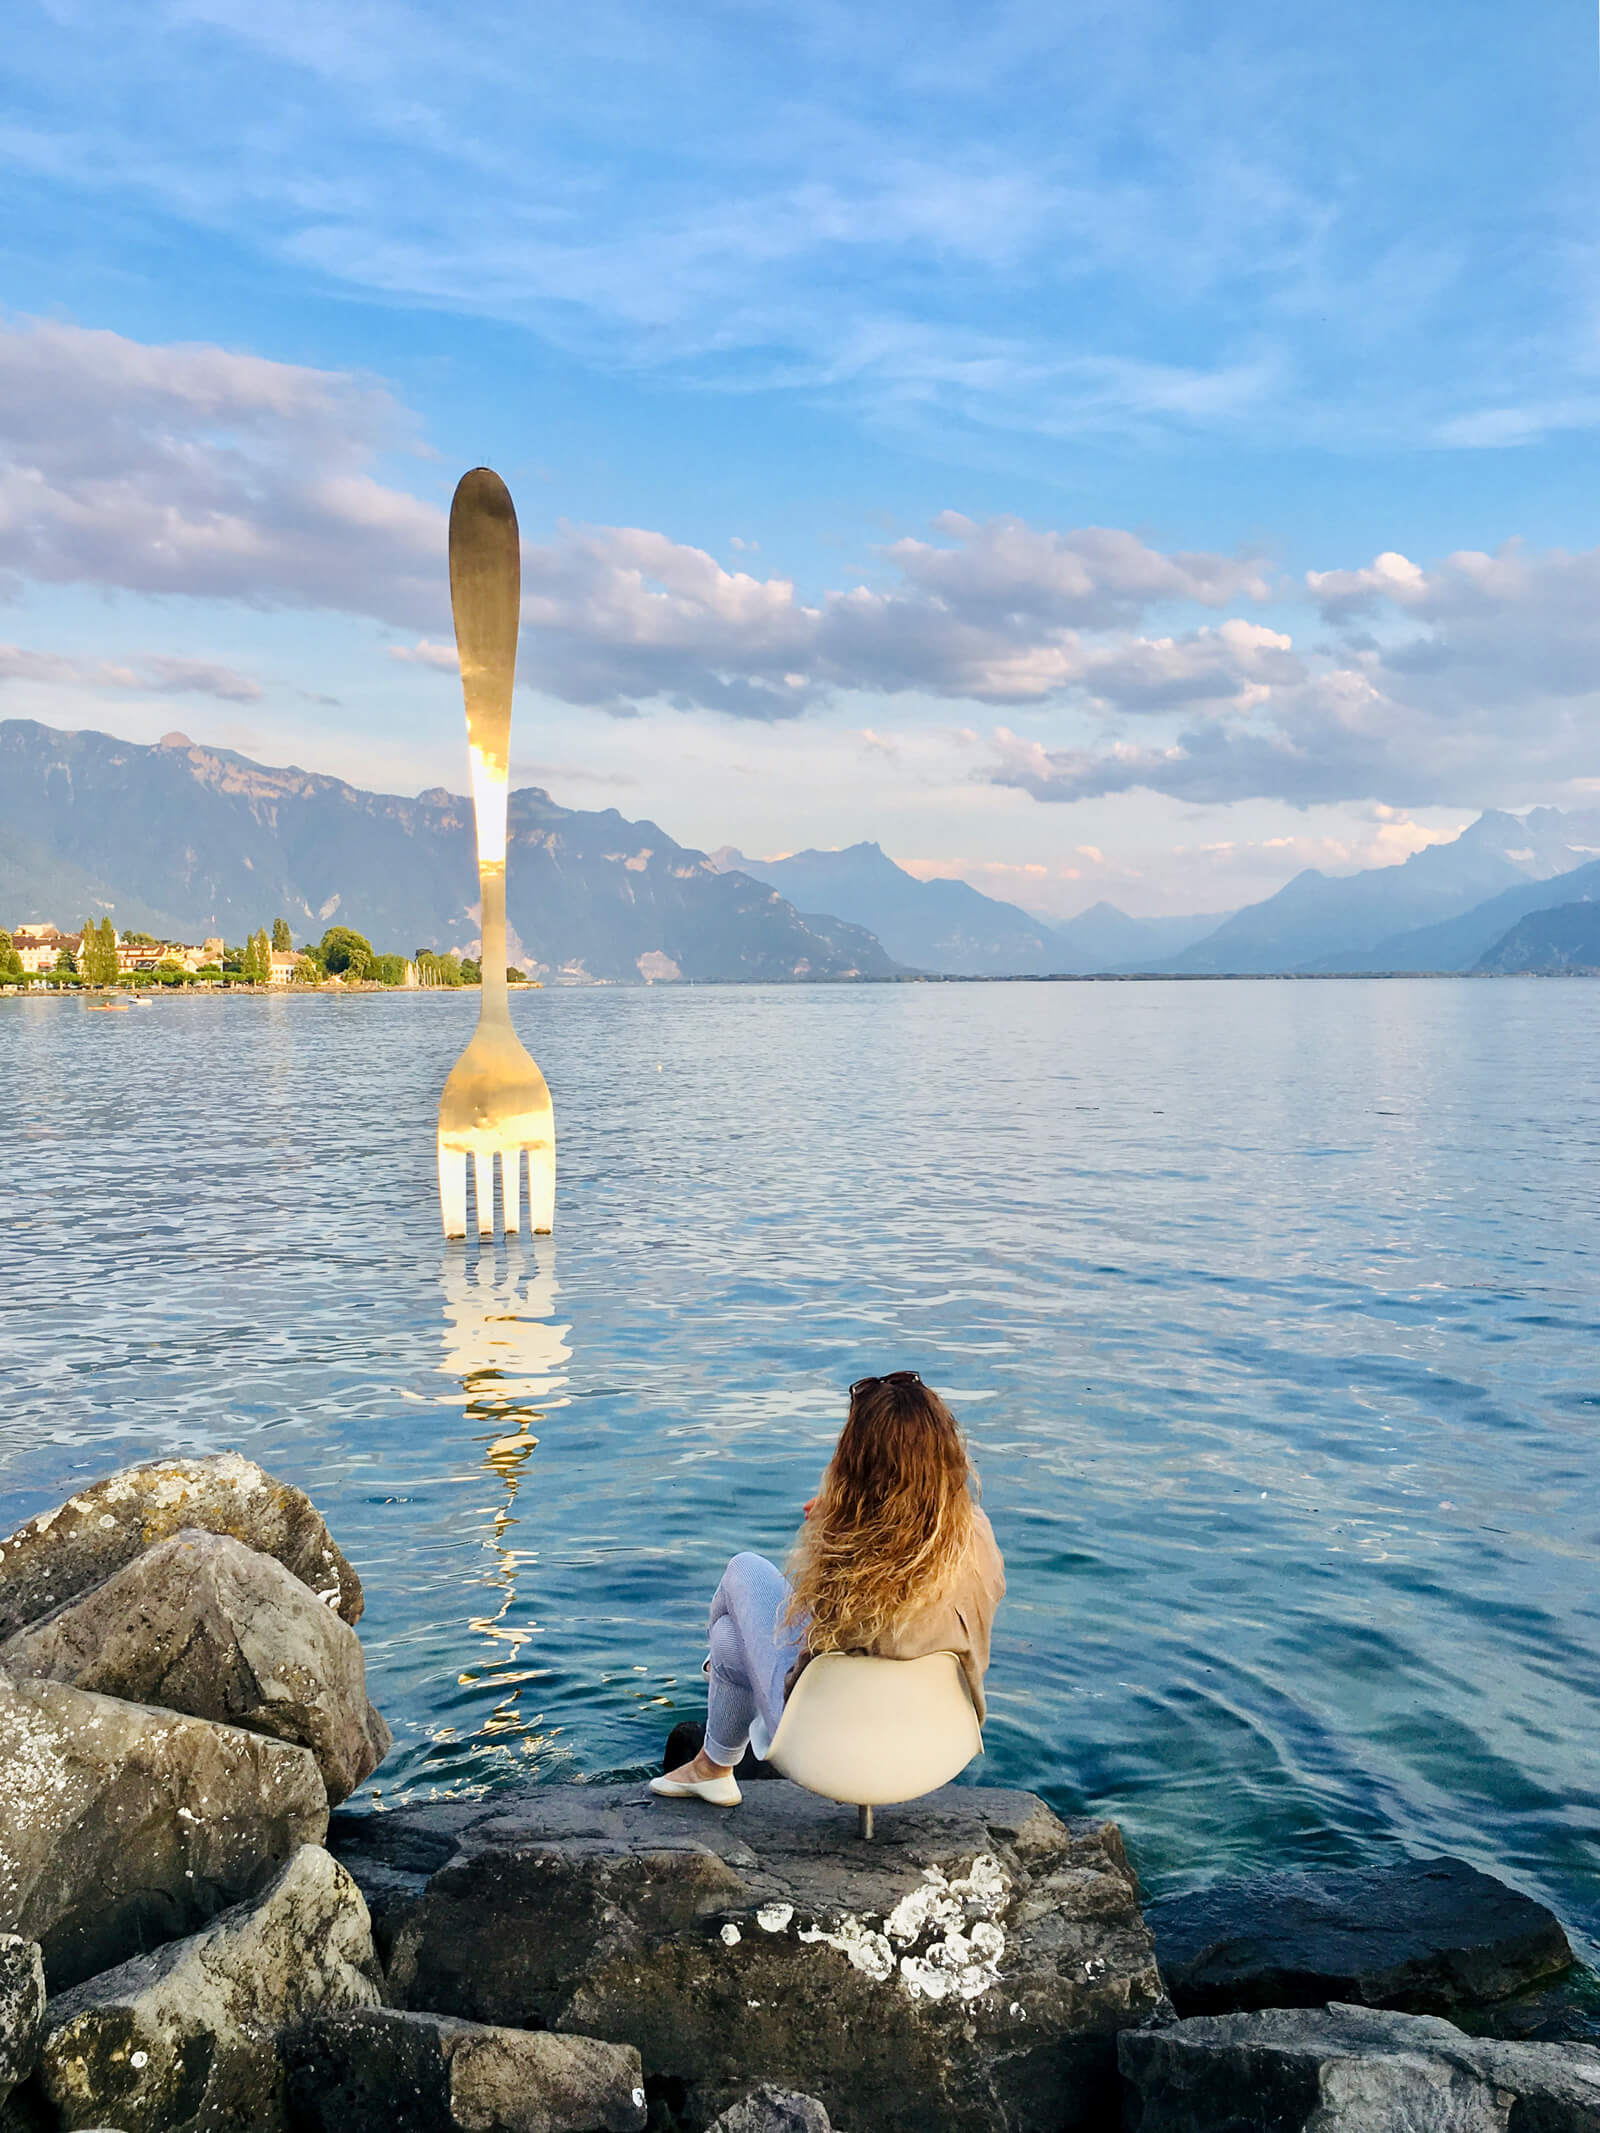 "The Fork" in Lake Geneva at Vevey